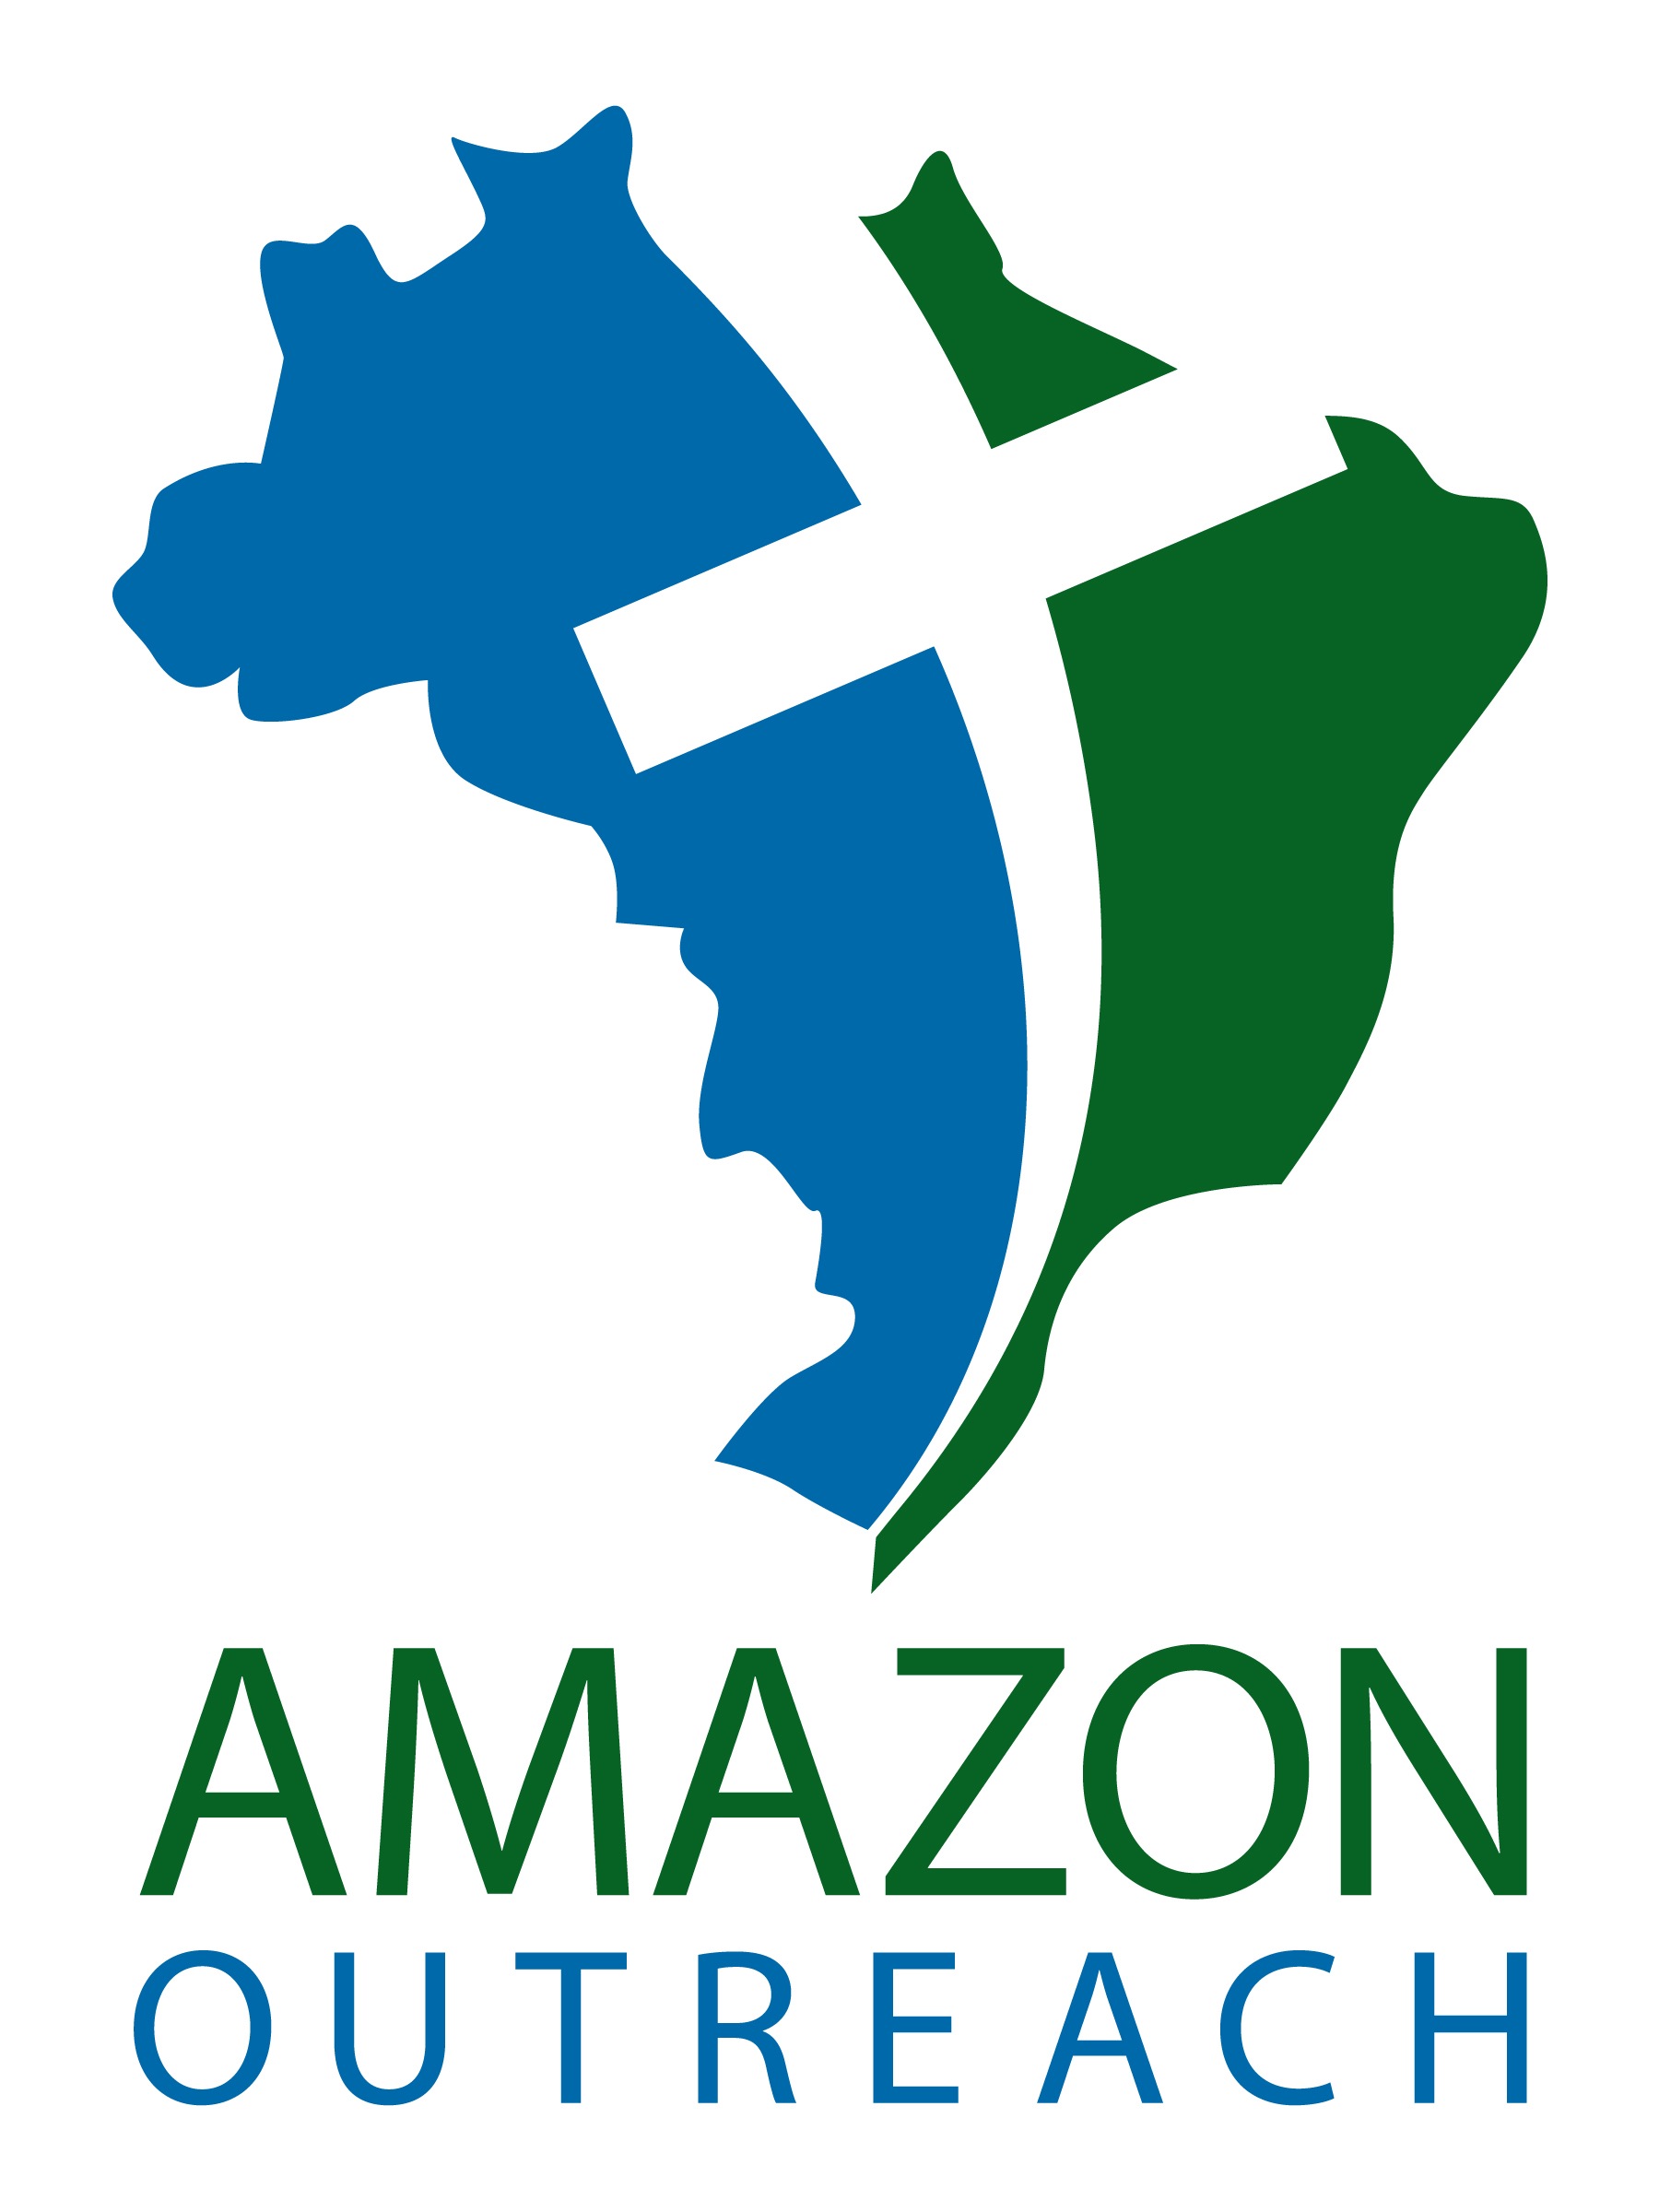 Amazon Outreach